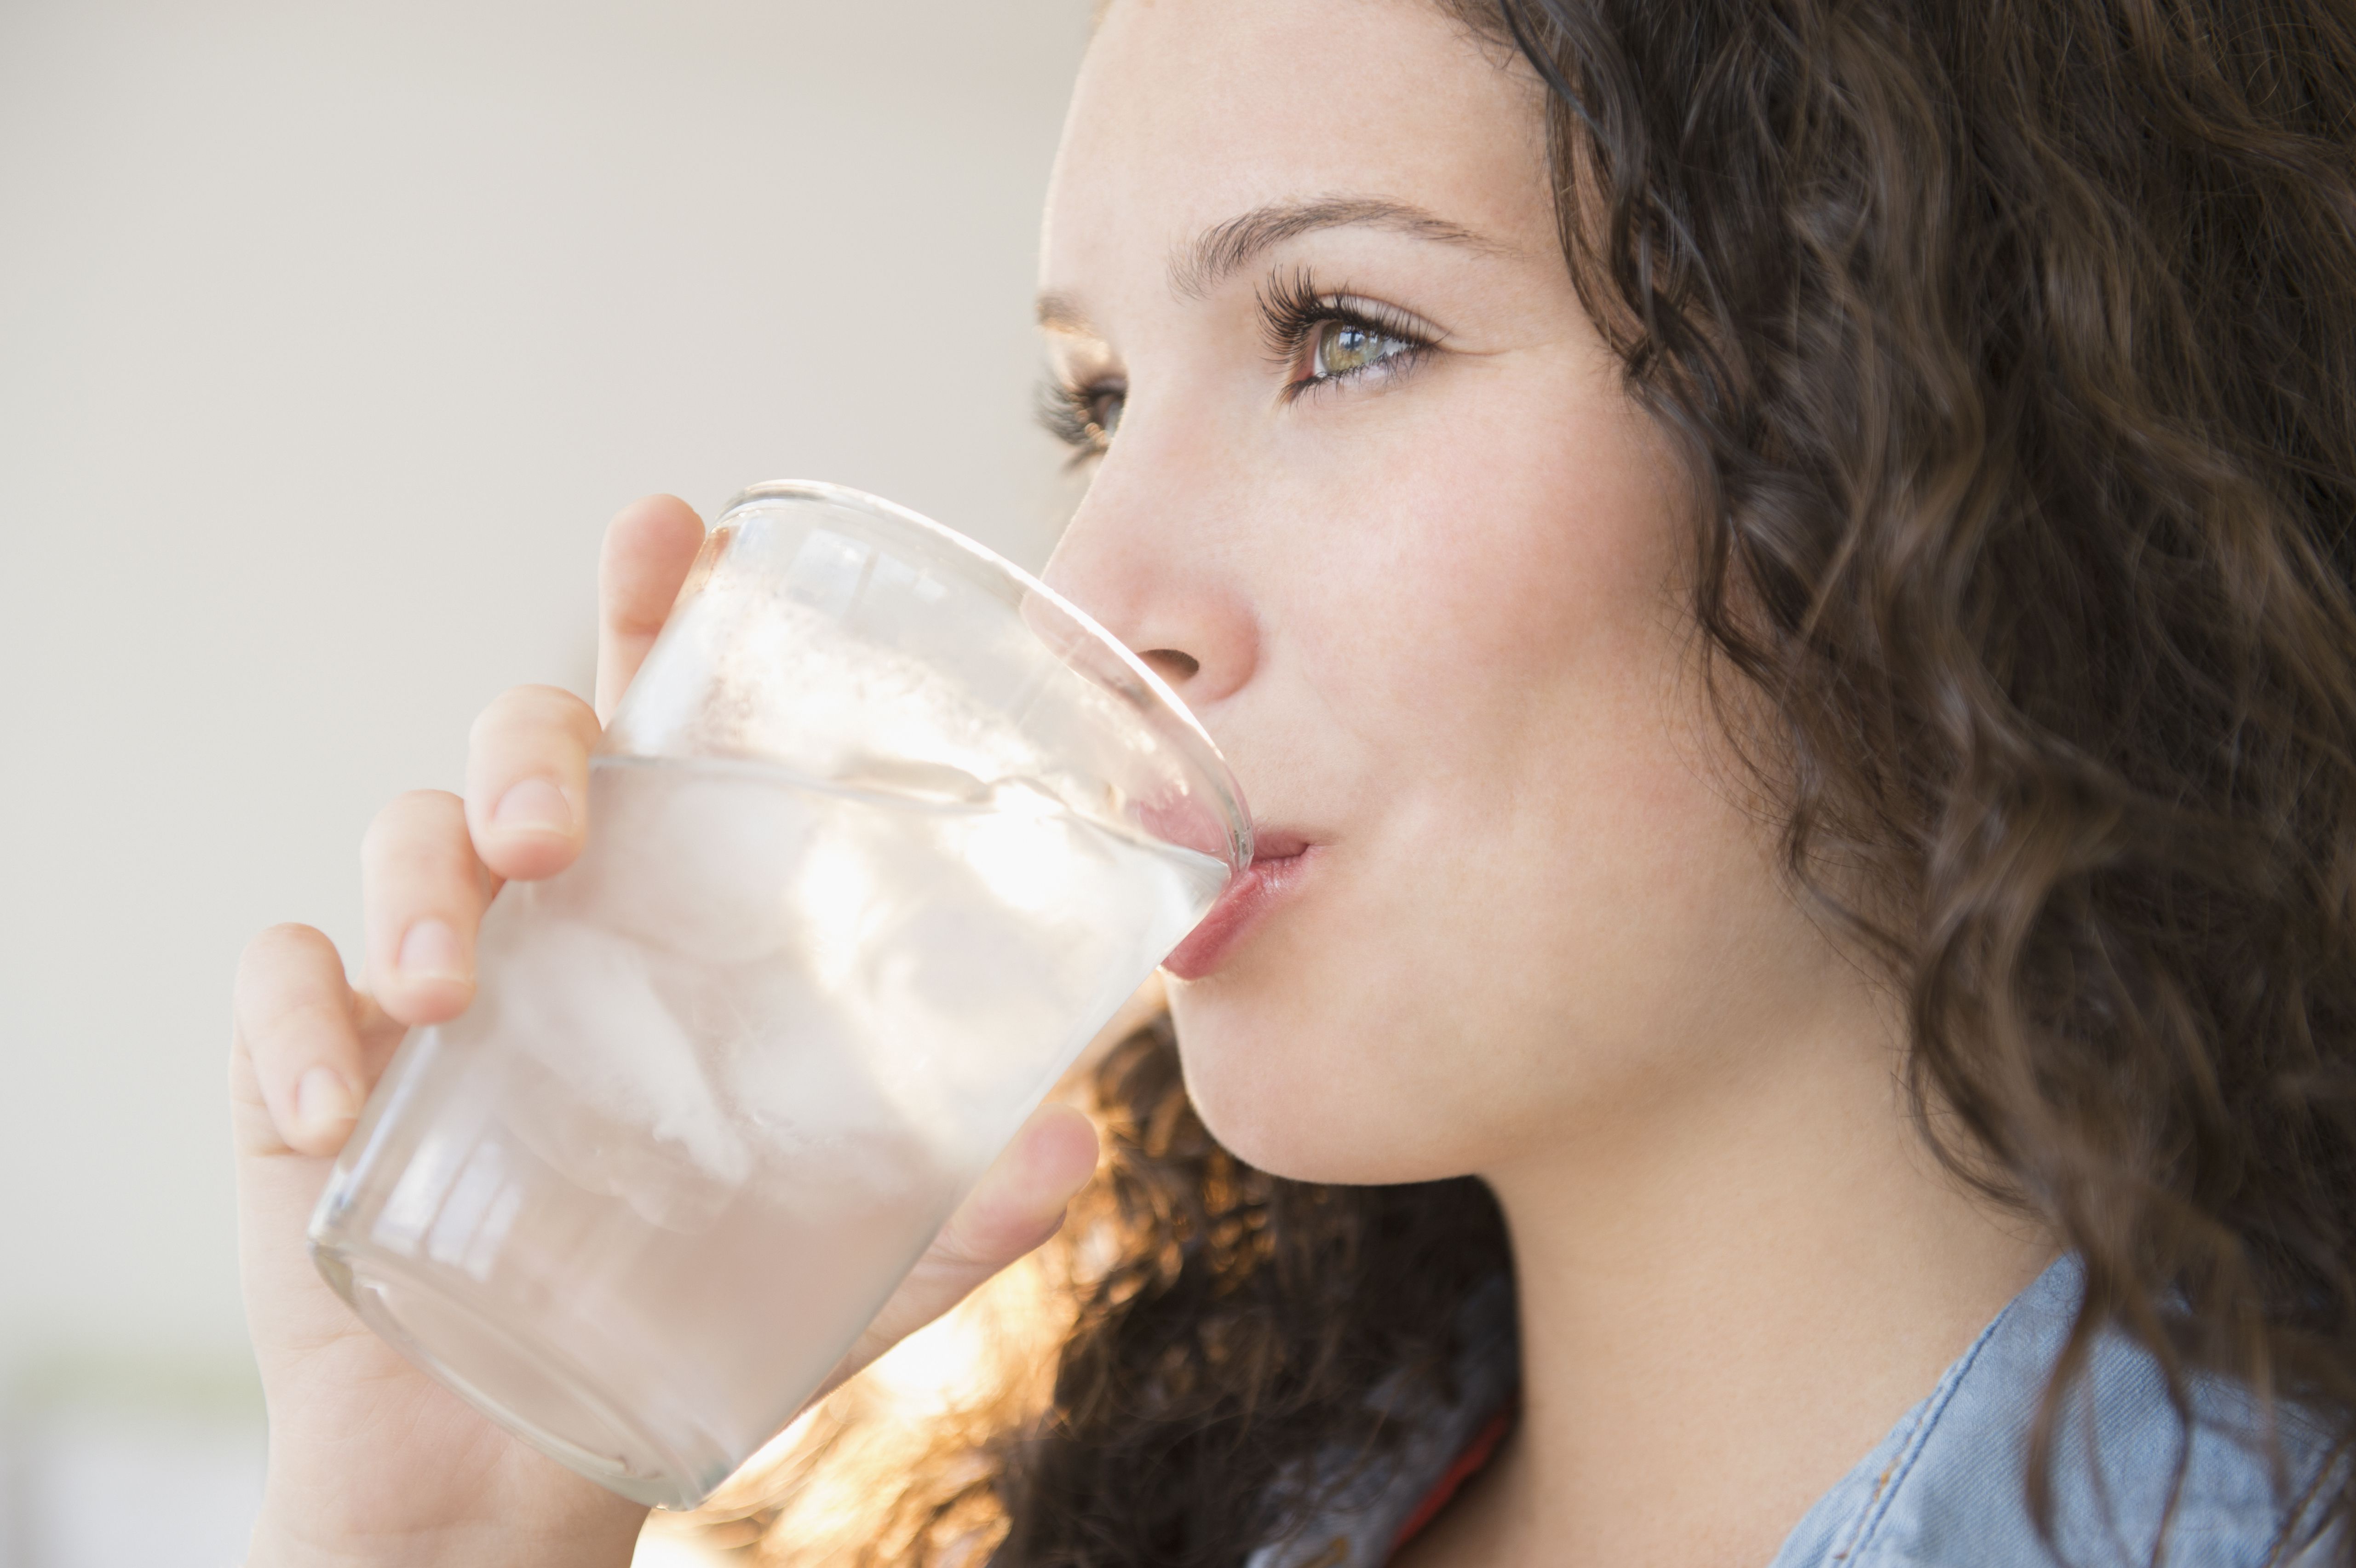 Сода во рту держать. Питье воды. Девушка пьет воду. Стакан воды. Девушка пьет воду из стакана.